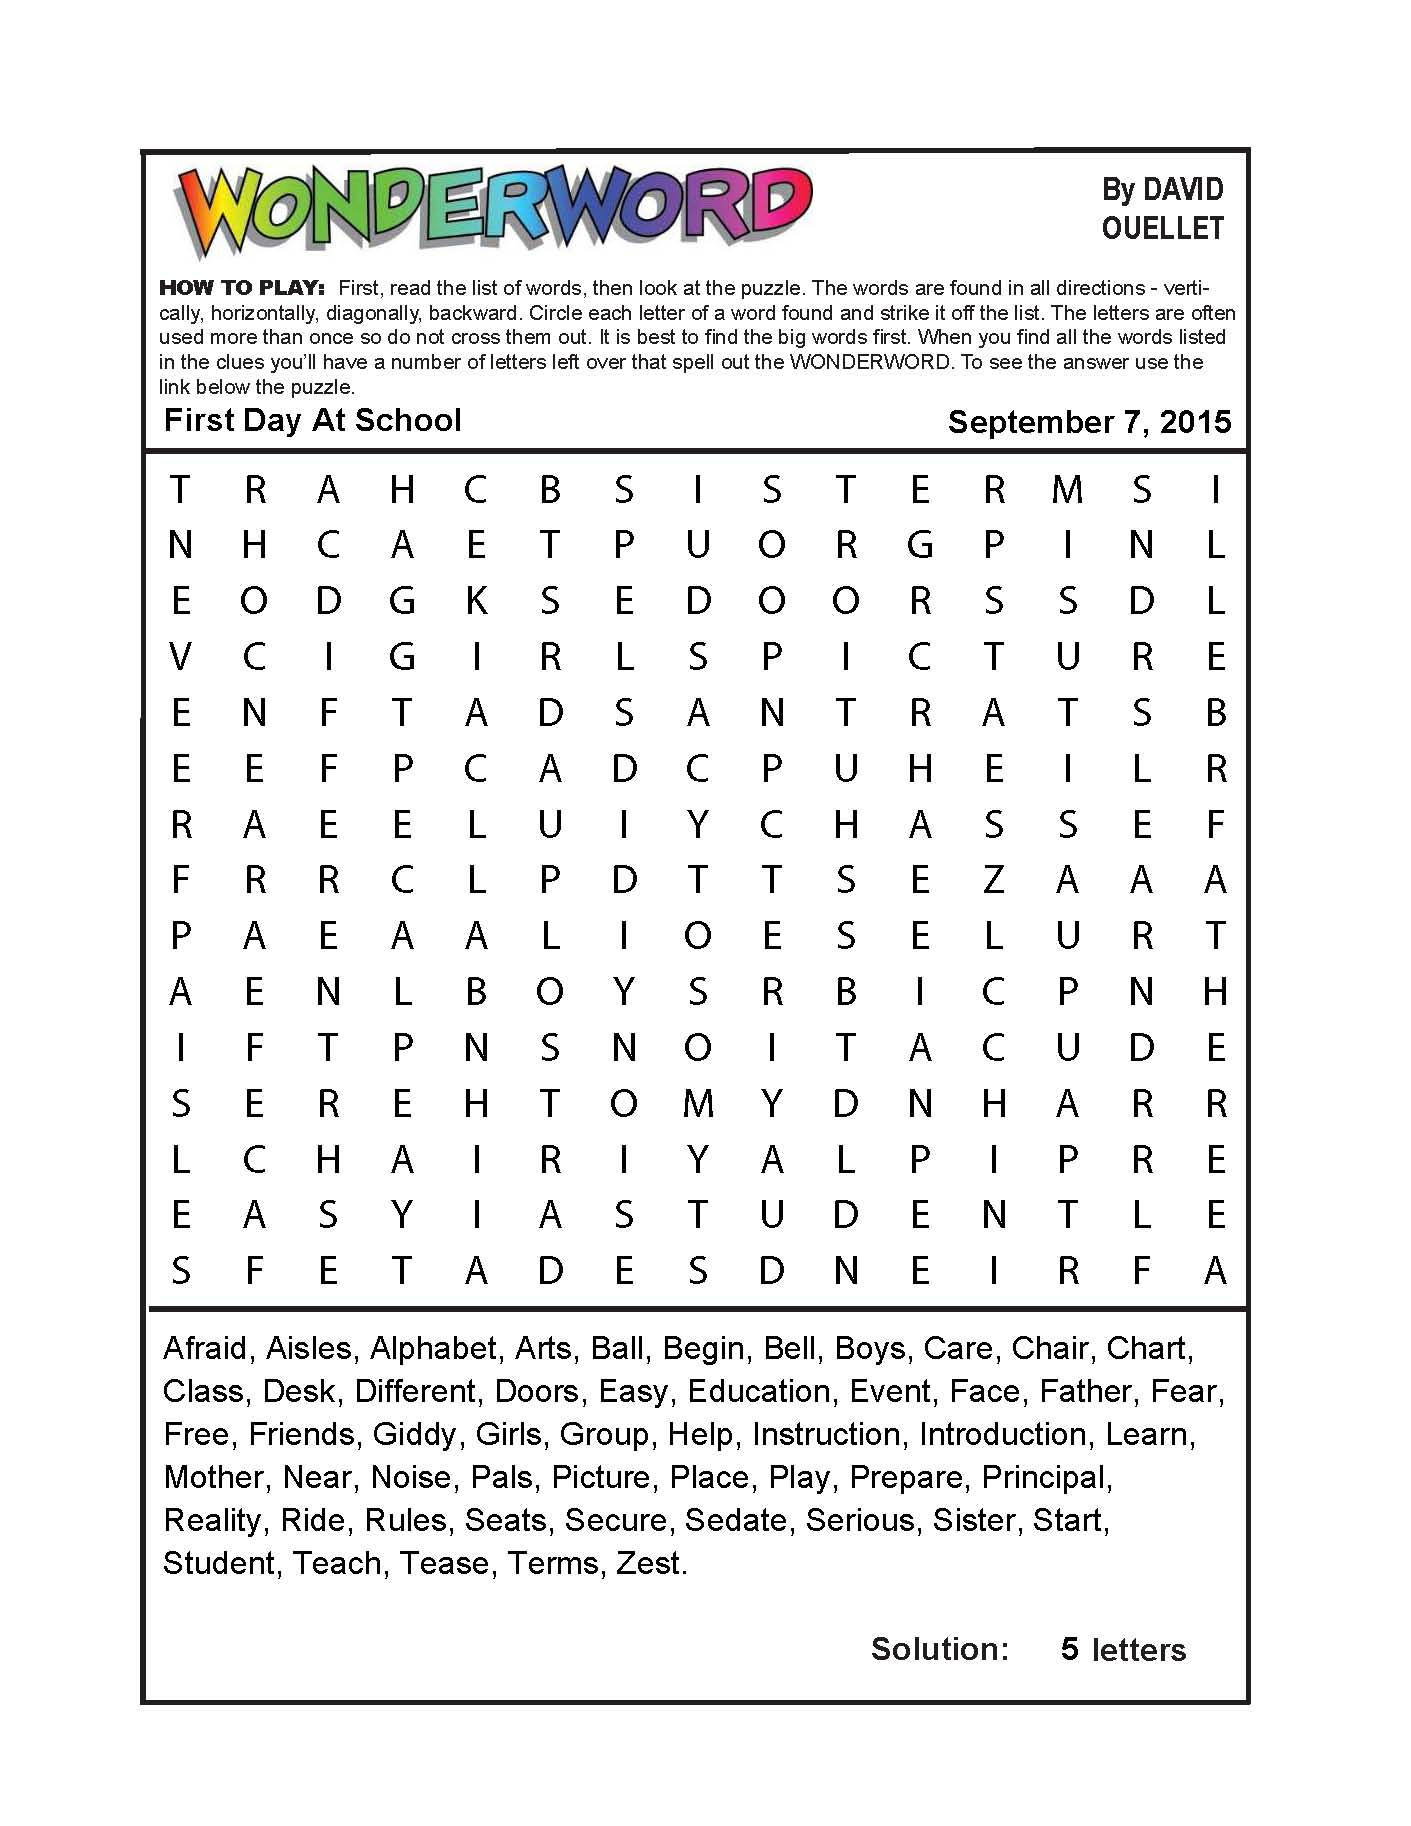 Free Printable Wonderword Puzzles Online